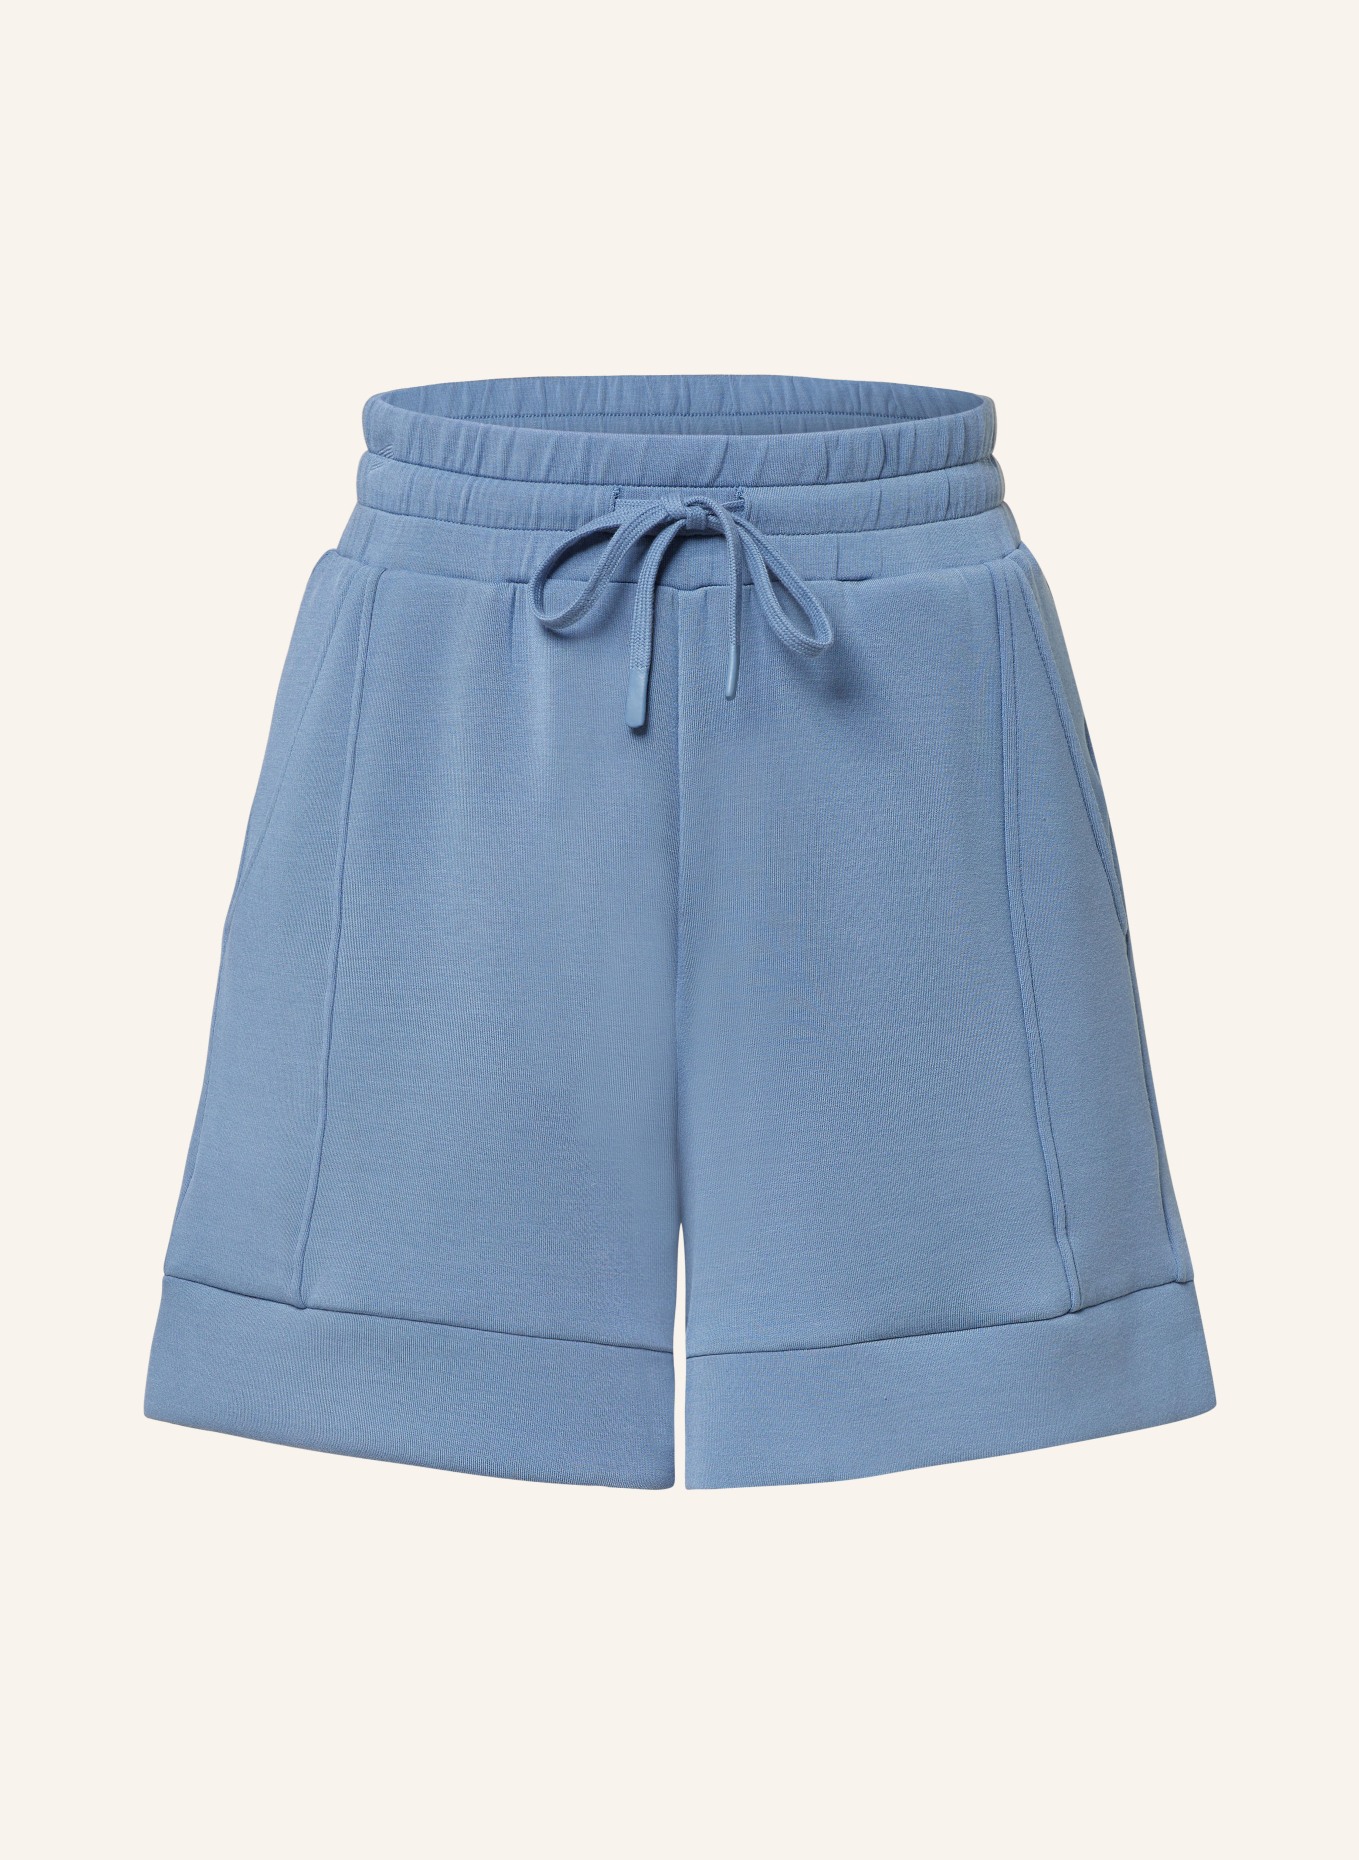 VARLEY Sweat shorts ALDER, Color: LIGHT BLUE (Image 1)